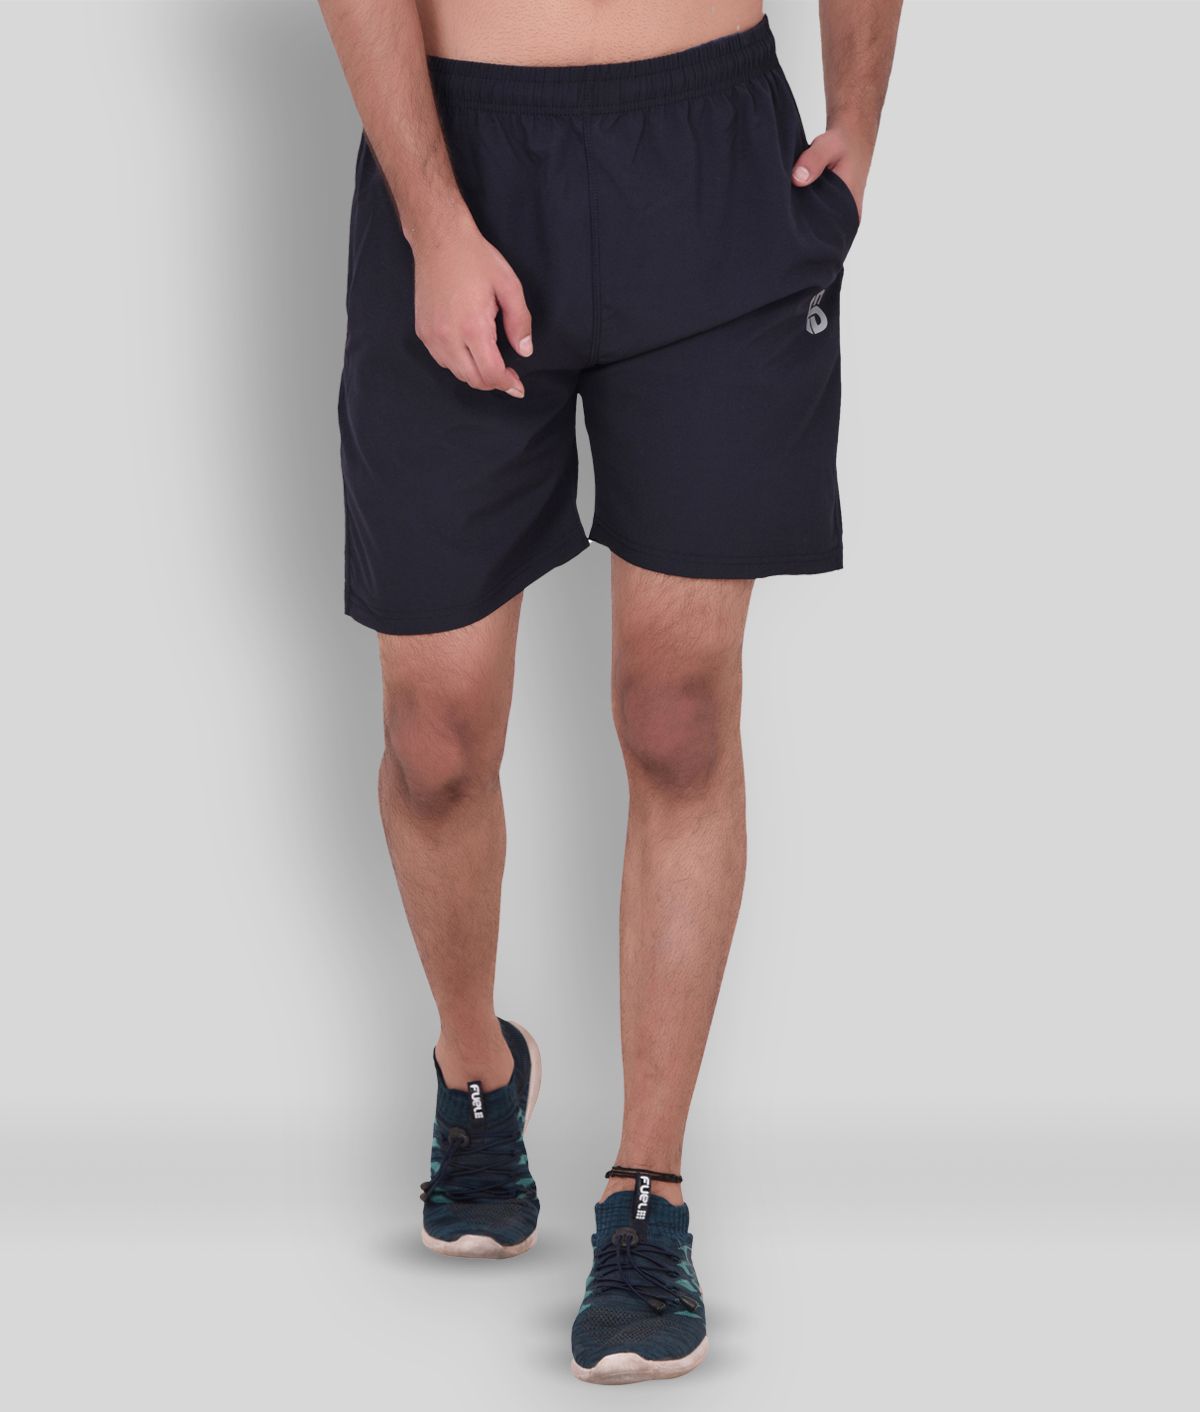     			4B Black Polyester Lycra Fitness Shorts Single